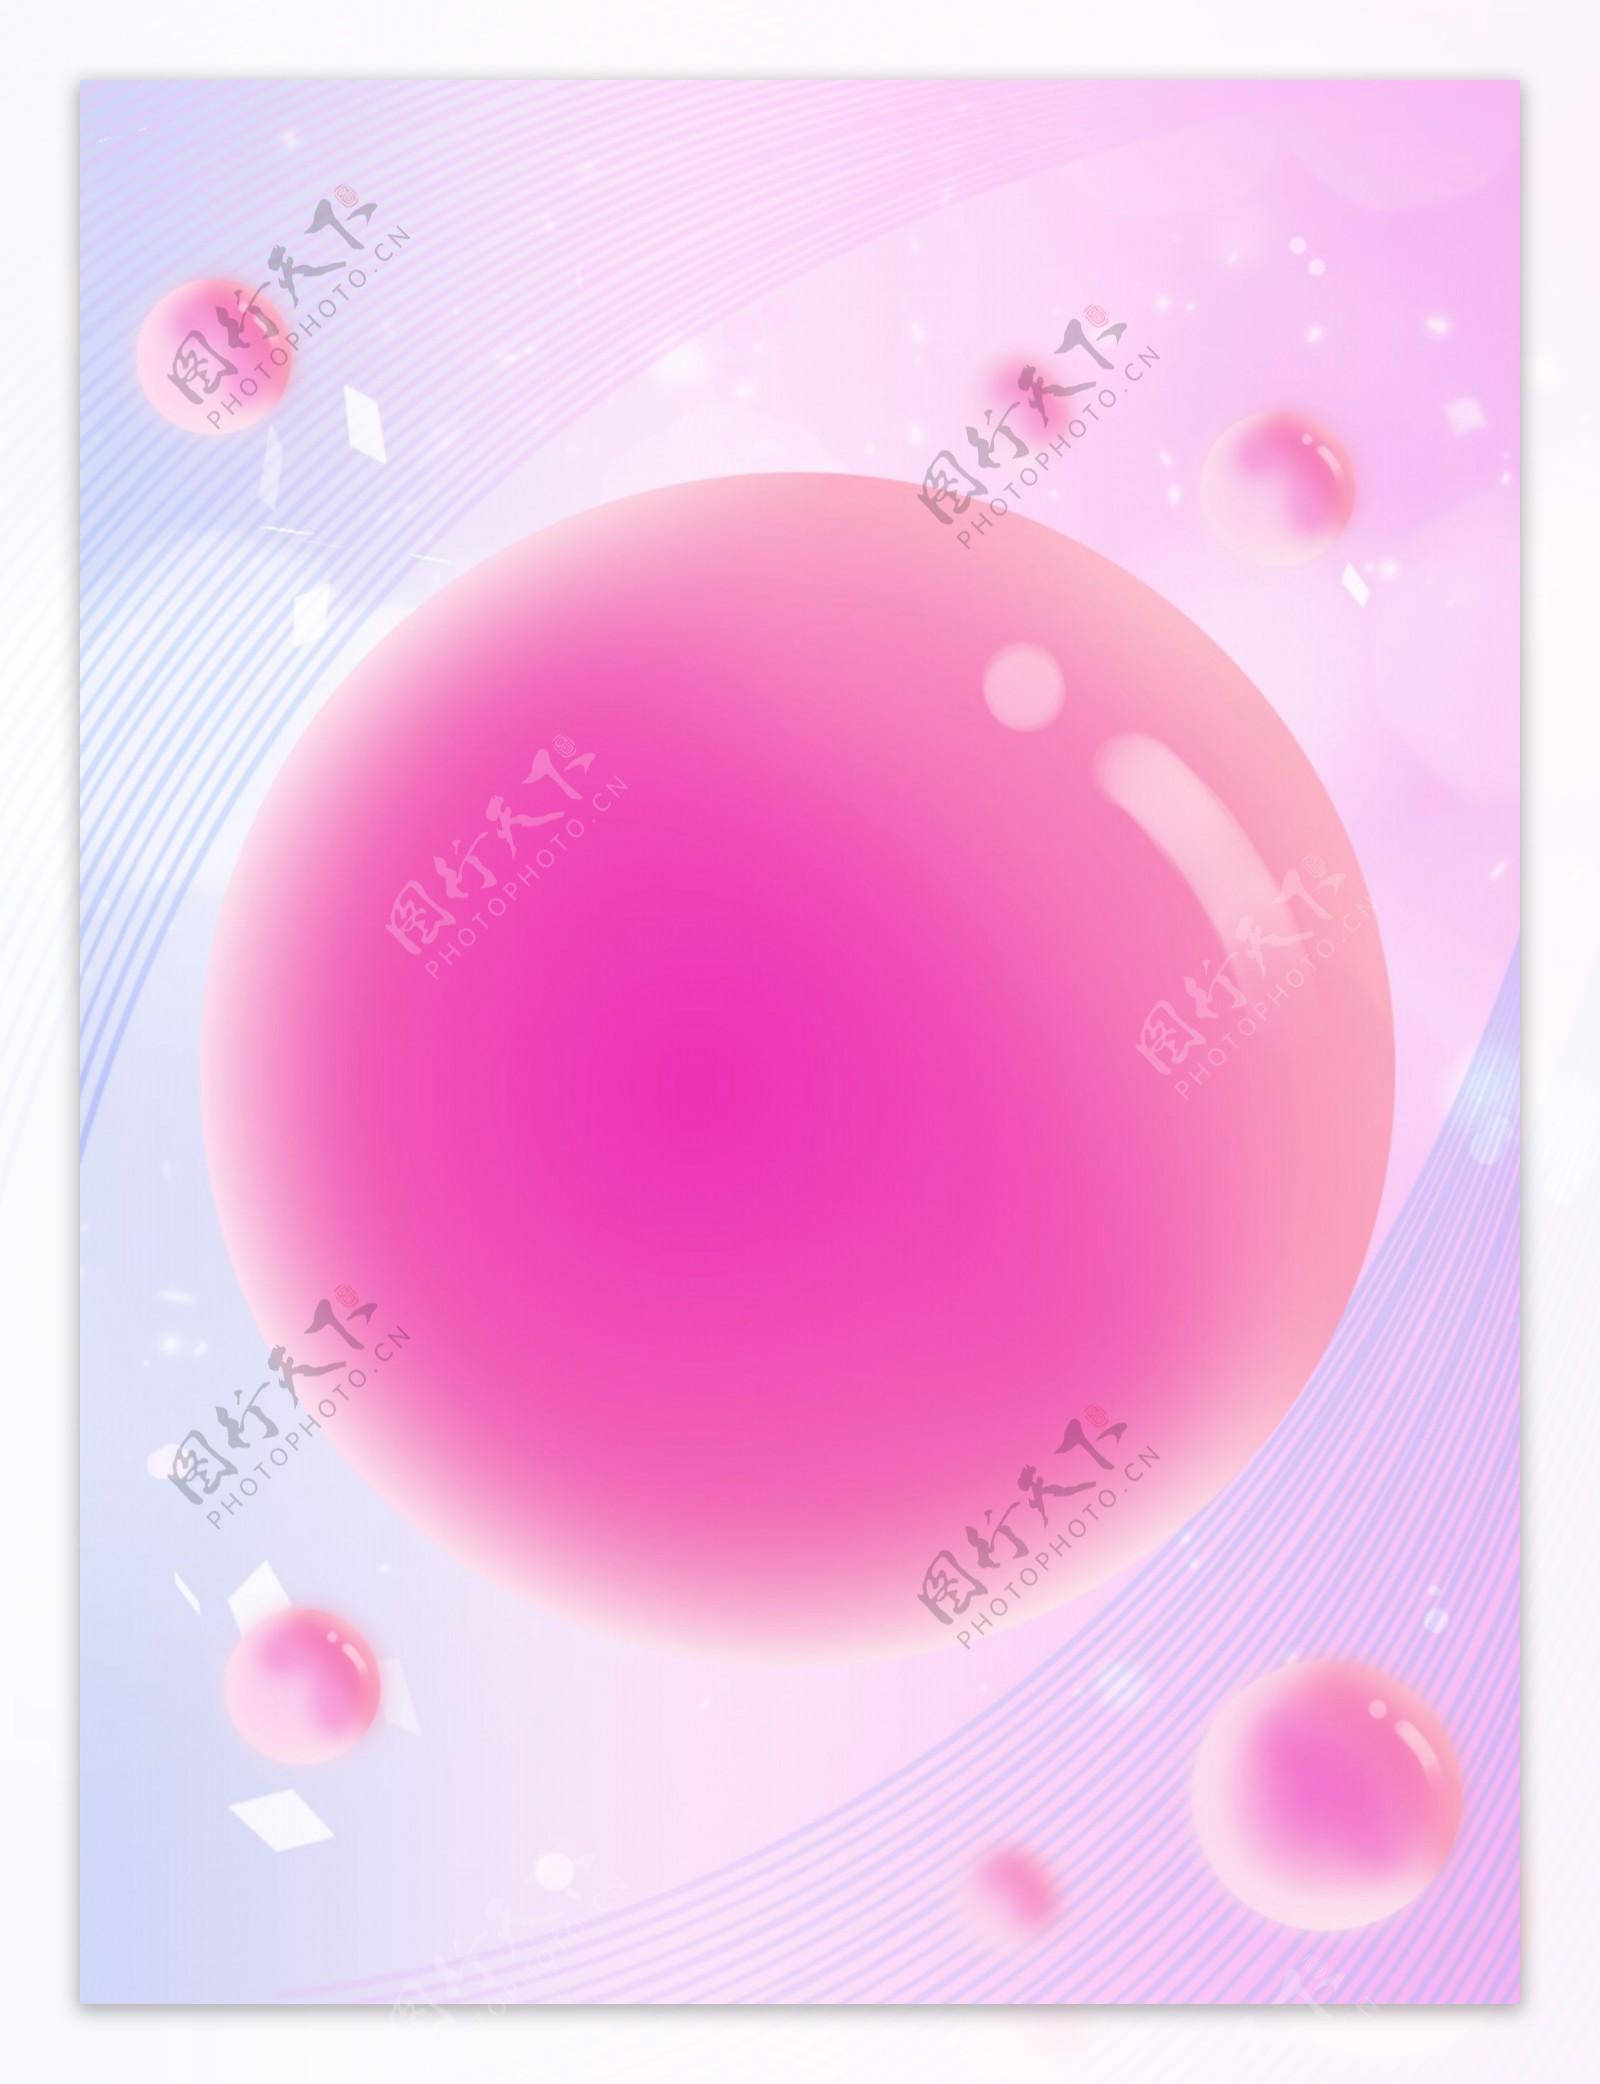 全原创粉色时尚大气活动球体背景